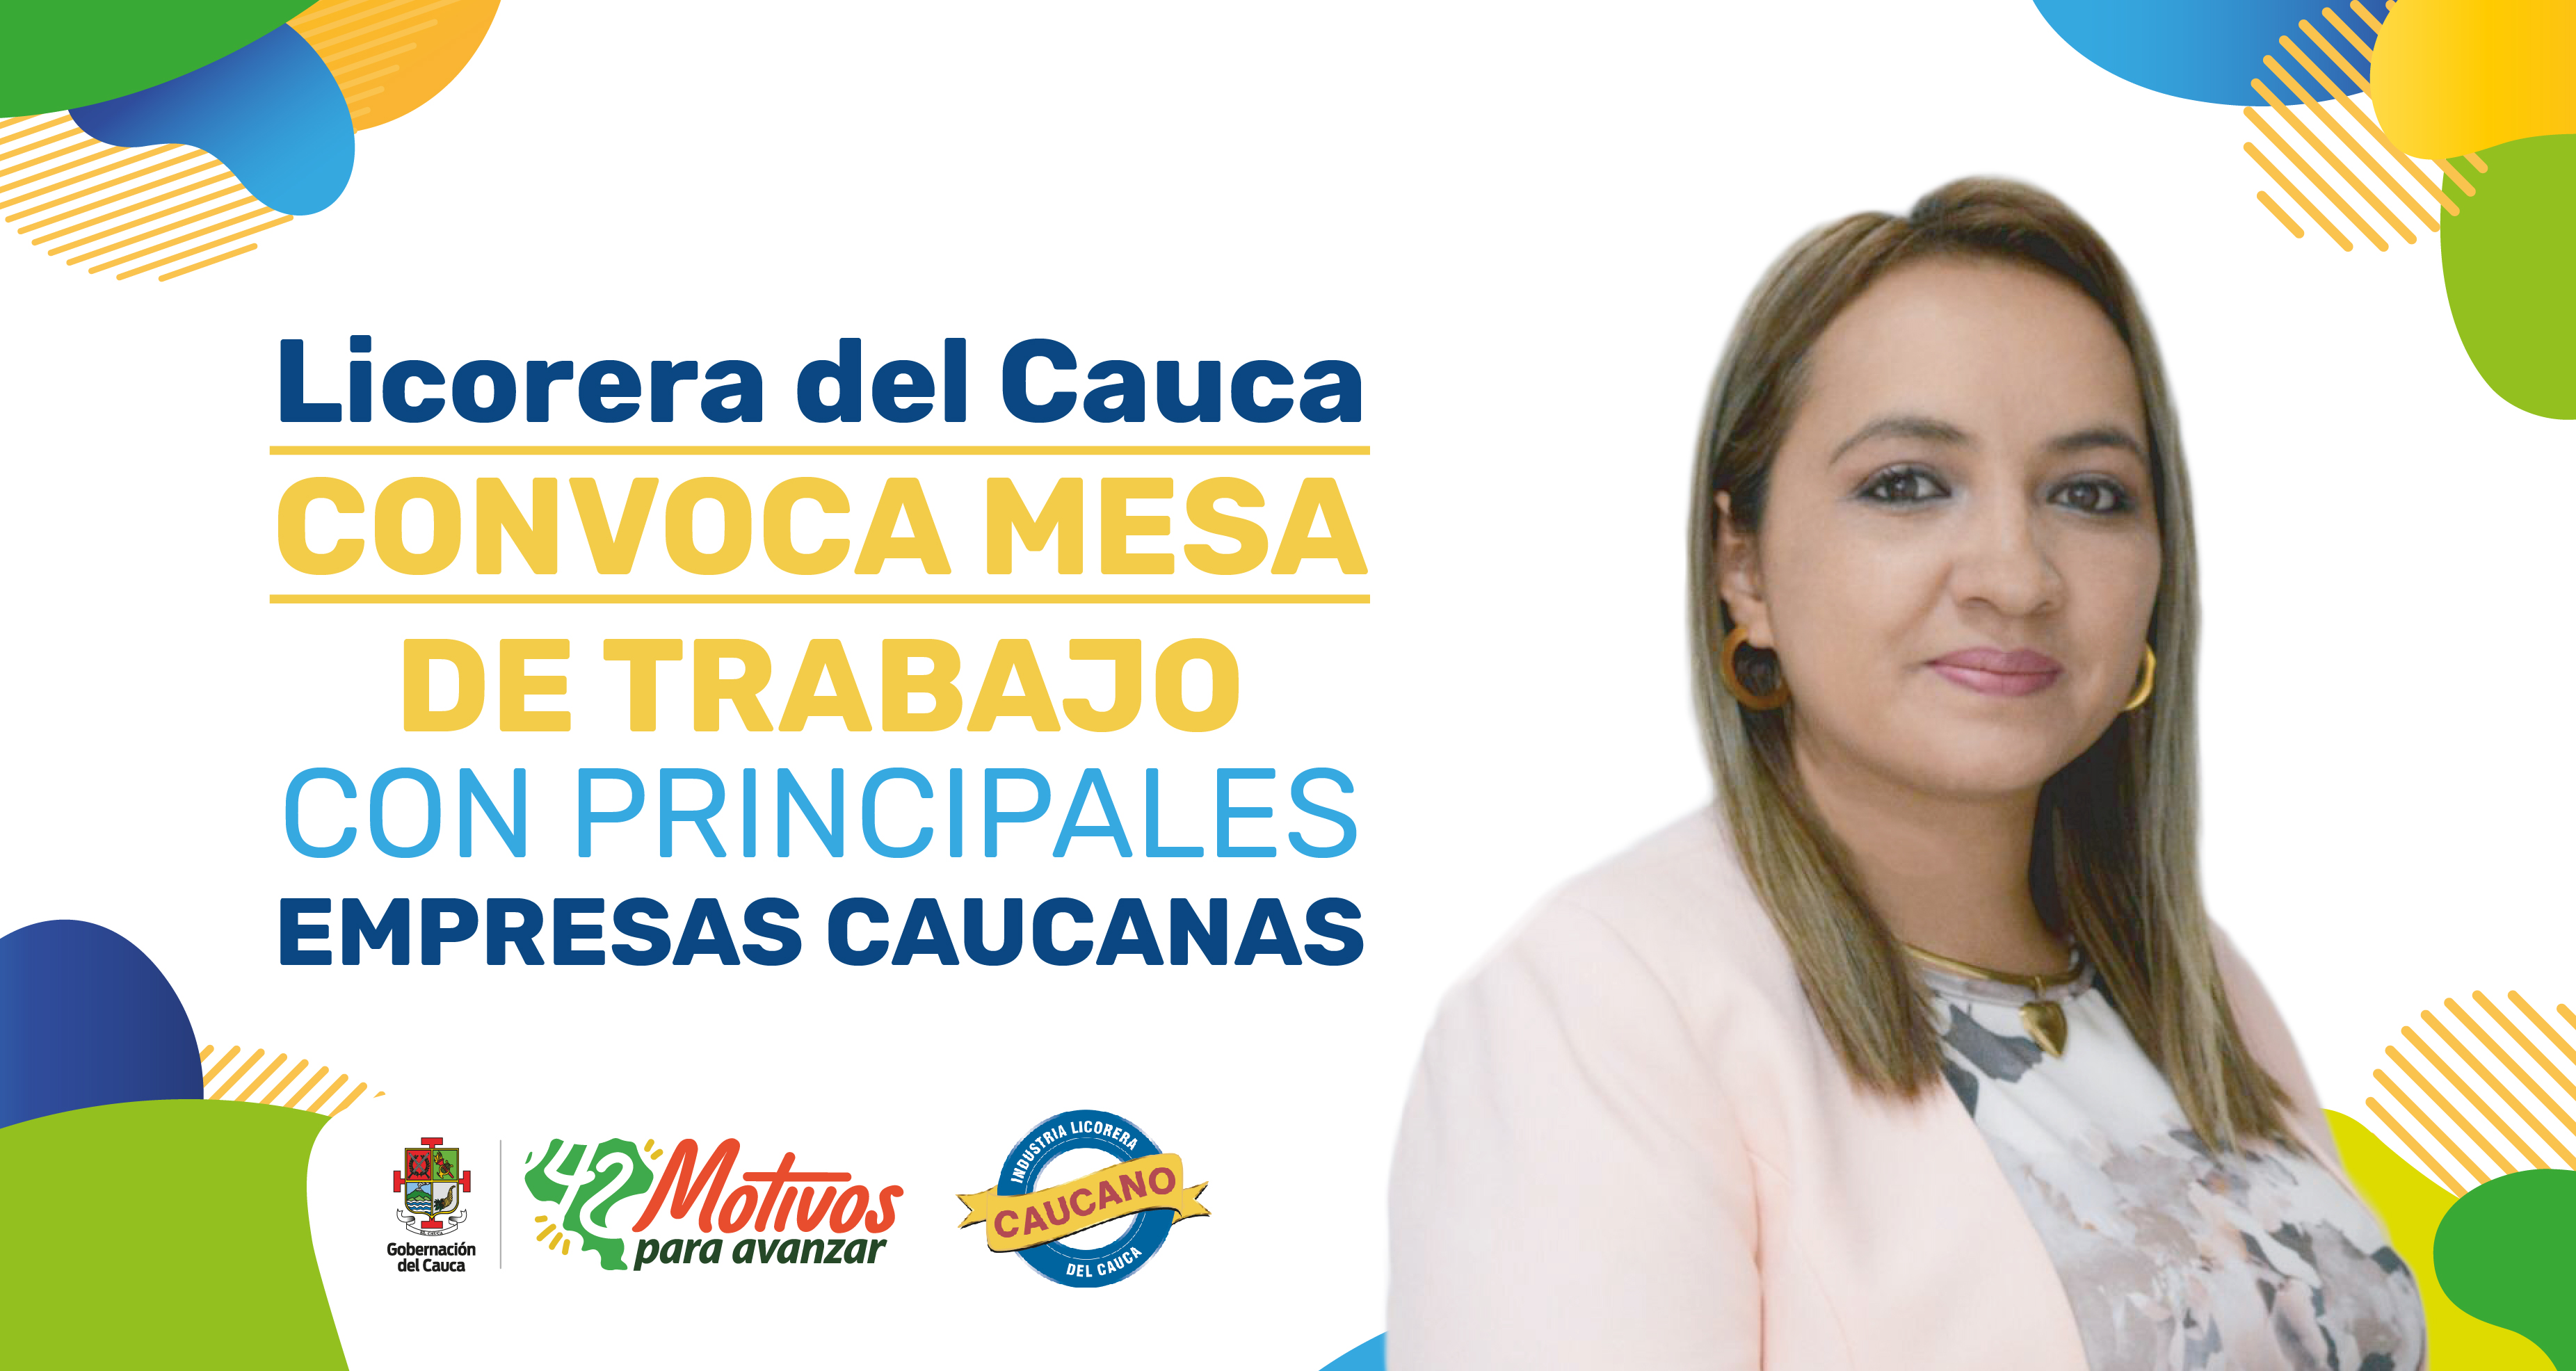 Gerente de la Licorera del Cauca, Victoria Feuillet convocó mesa de trabajo con principales empresas caucanas